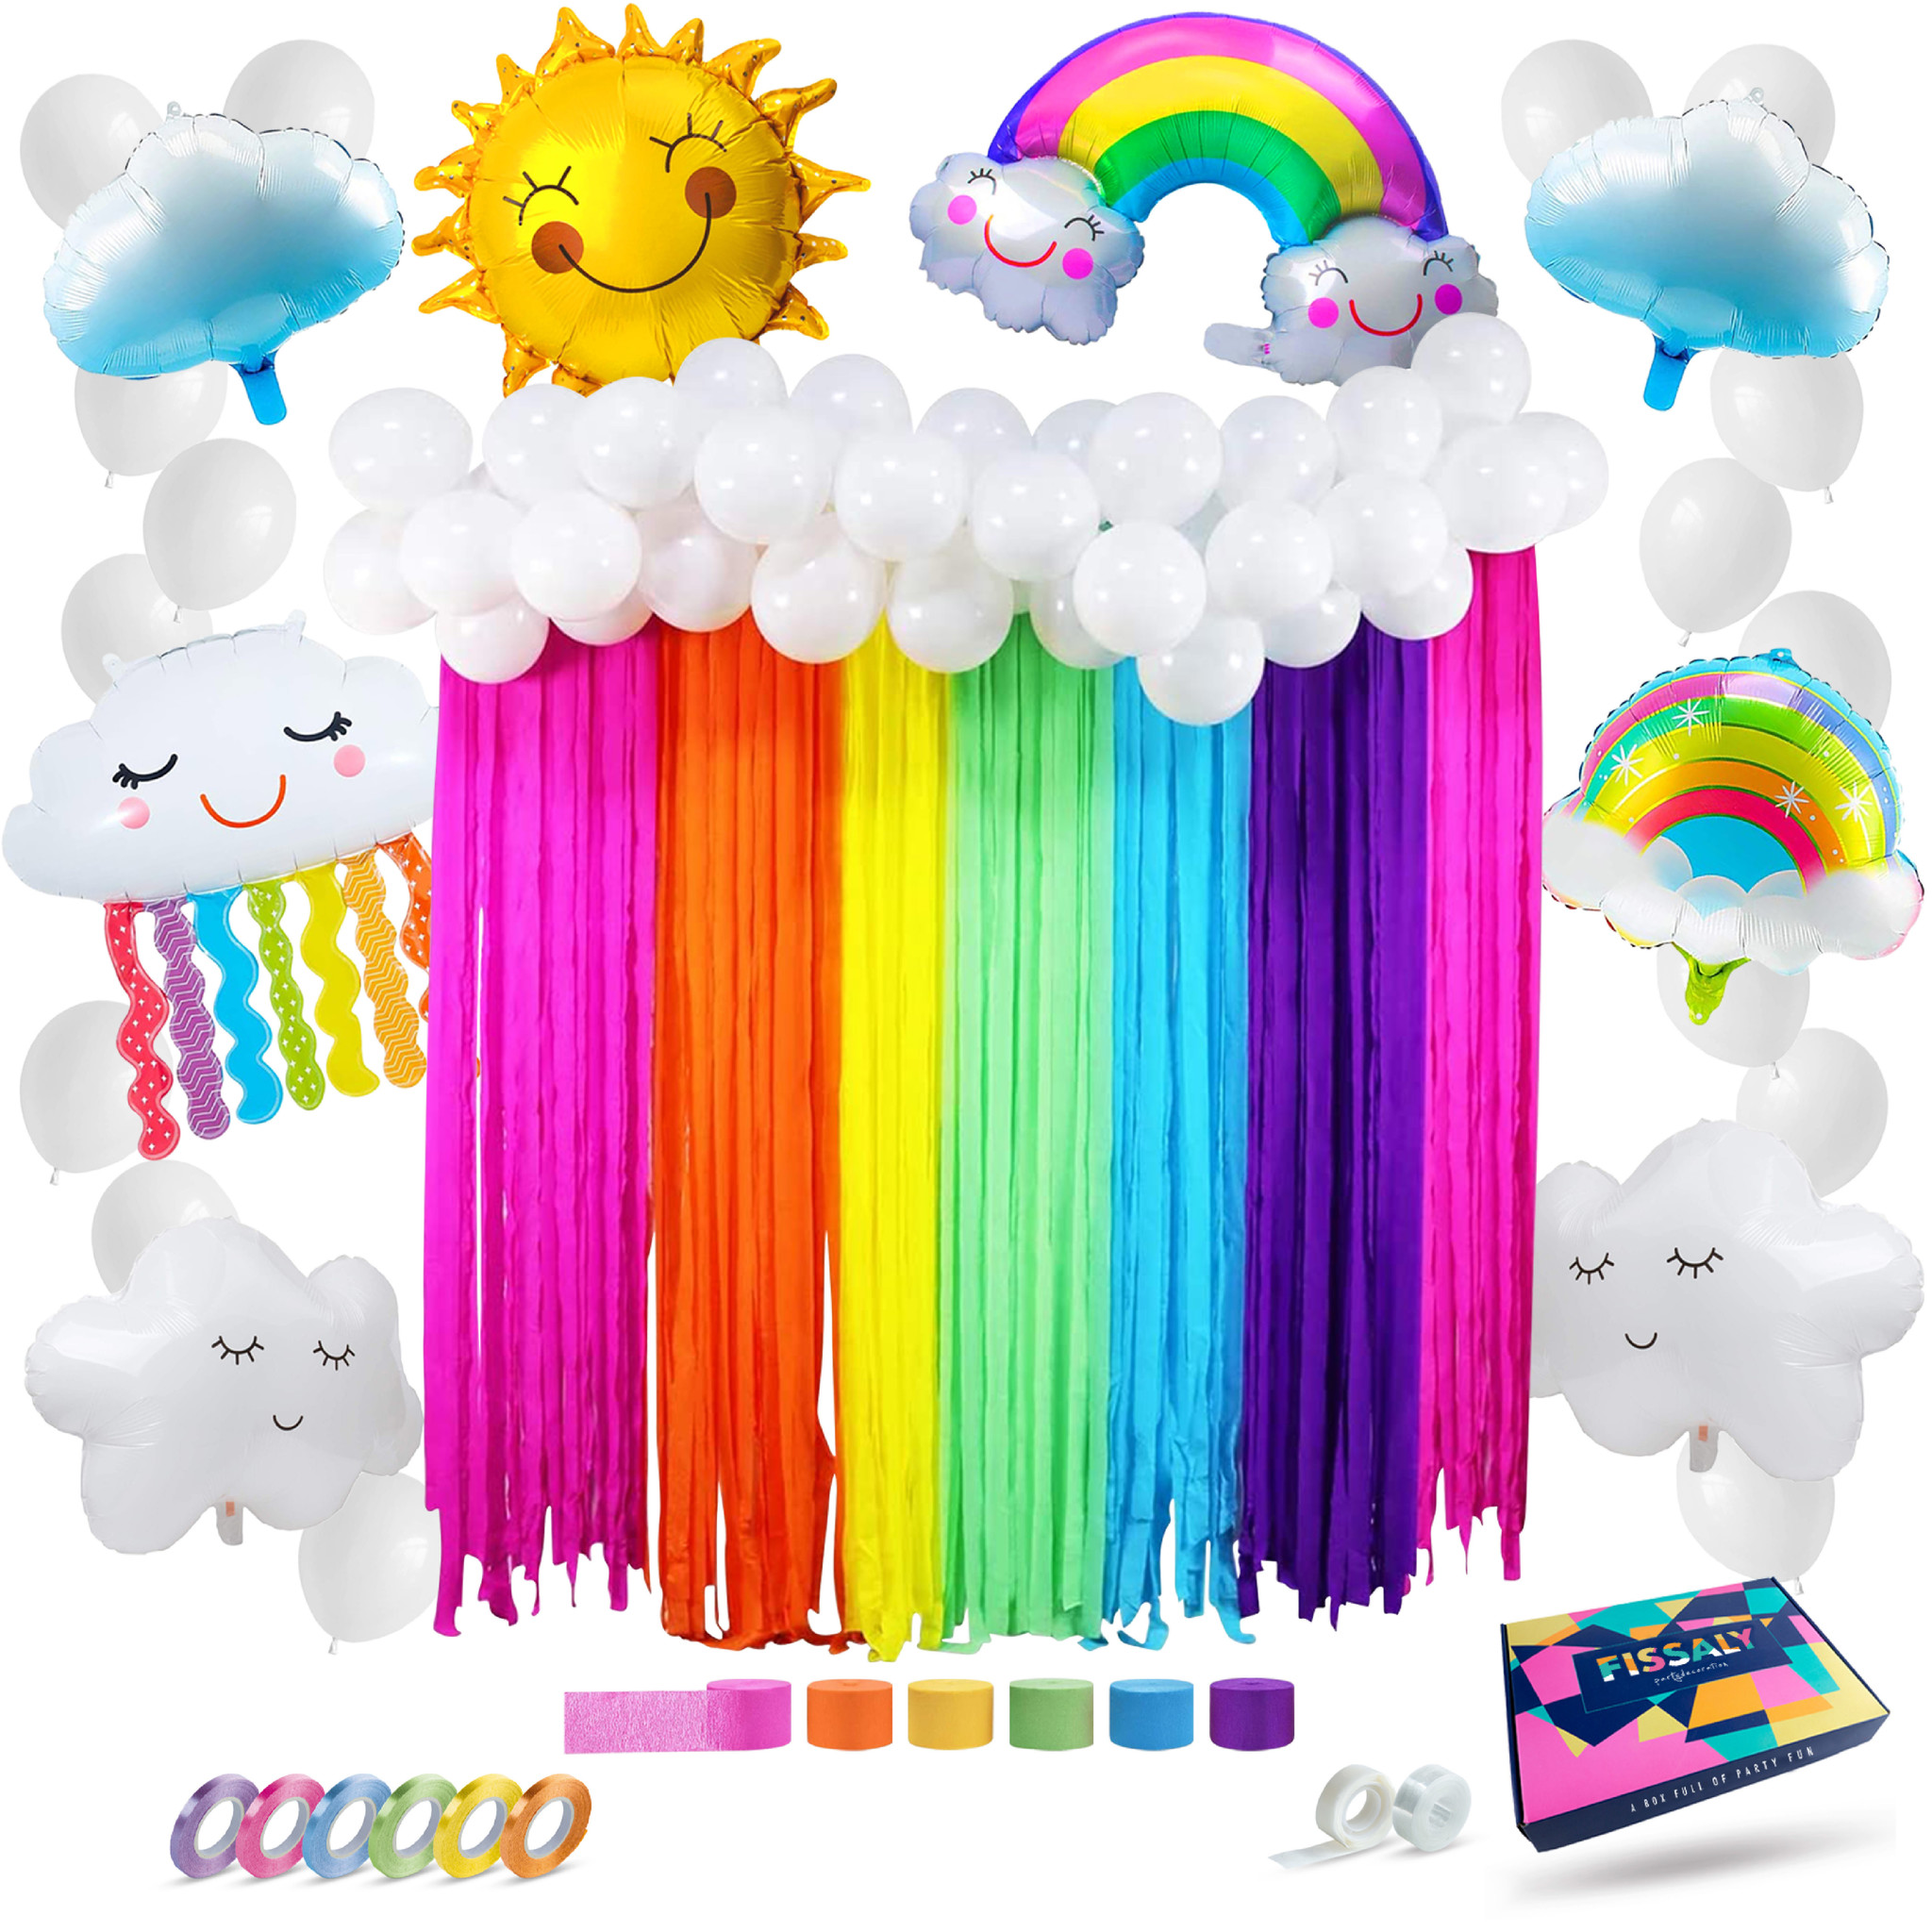 terug Tot stand brengen Nauwkeurig Regenboog Ballonnen Set - Fissaly